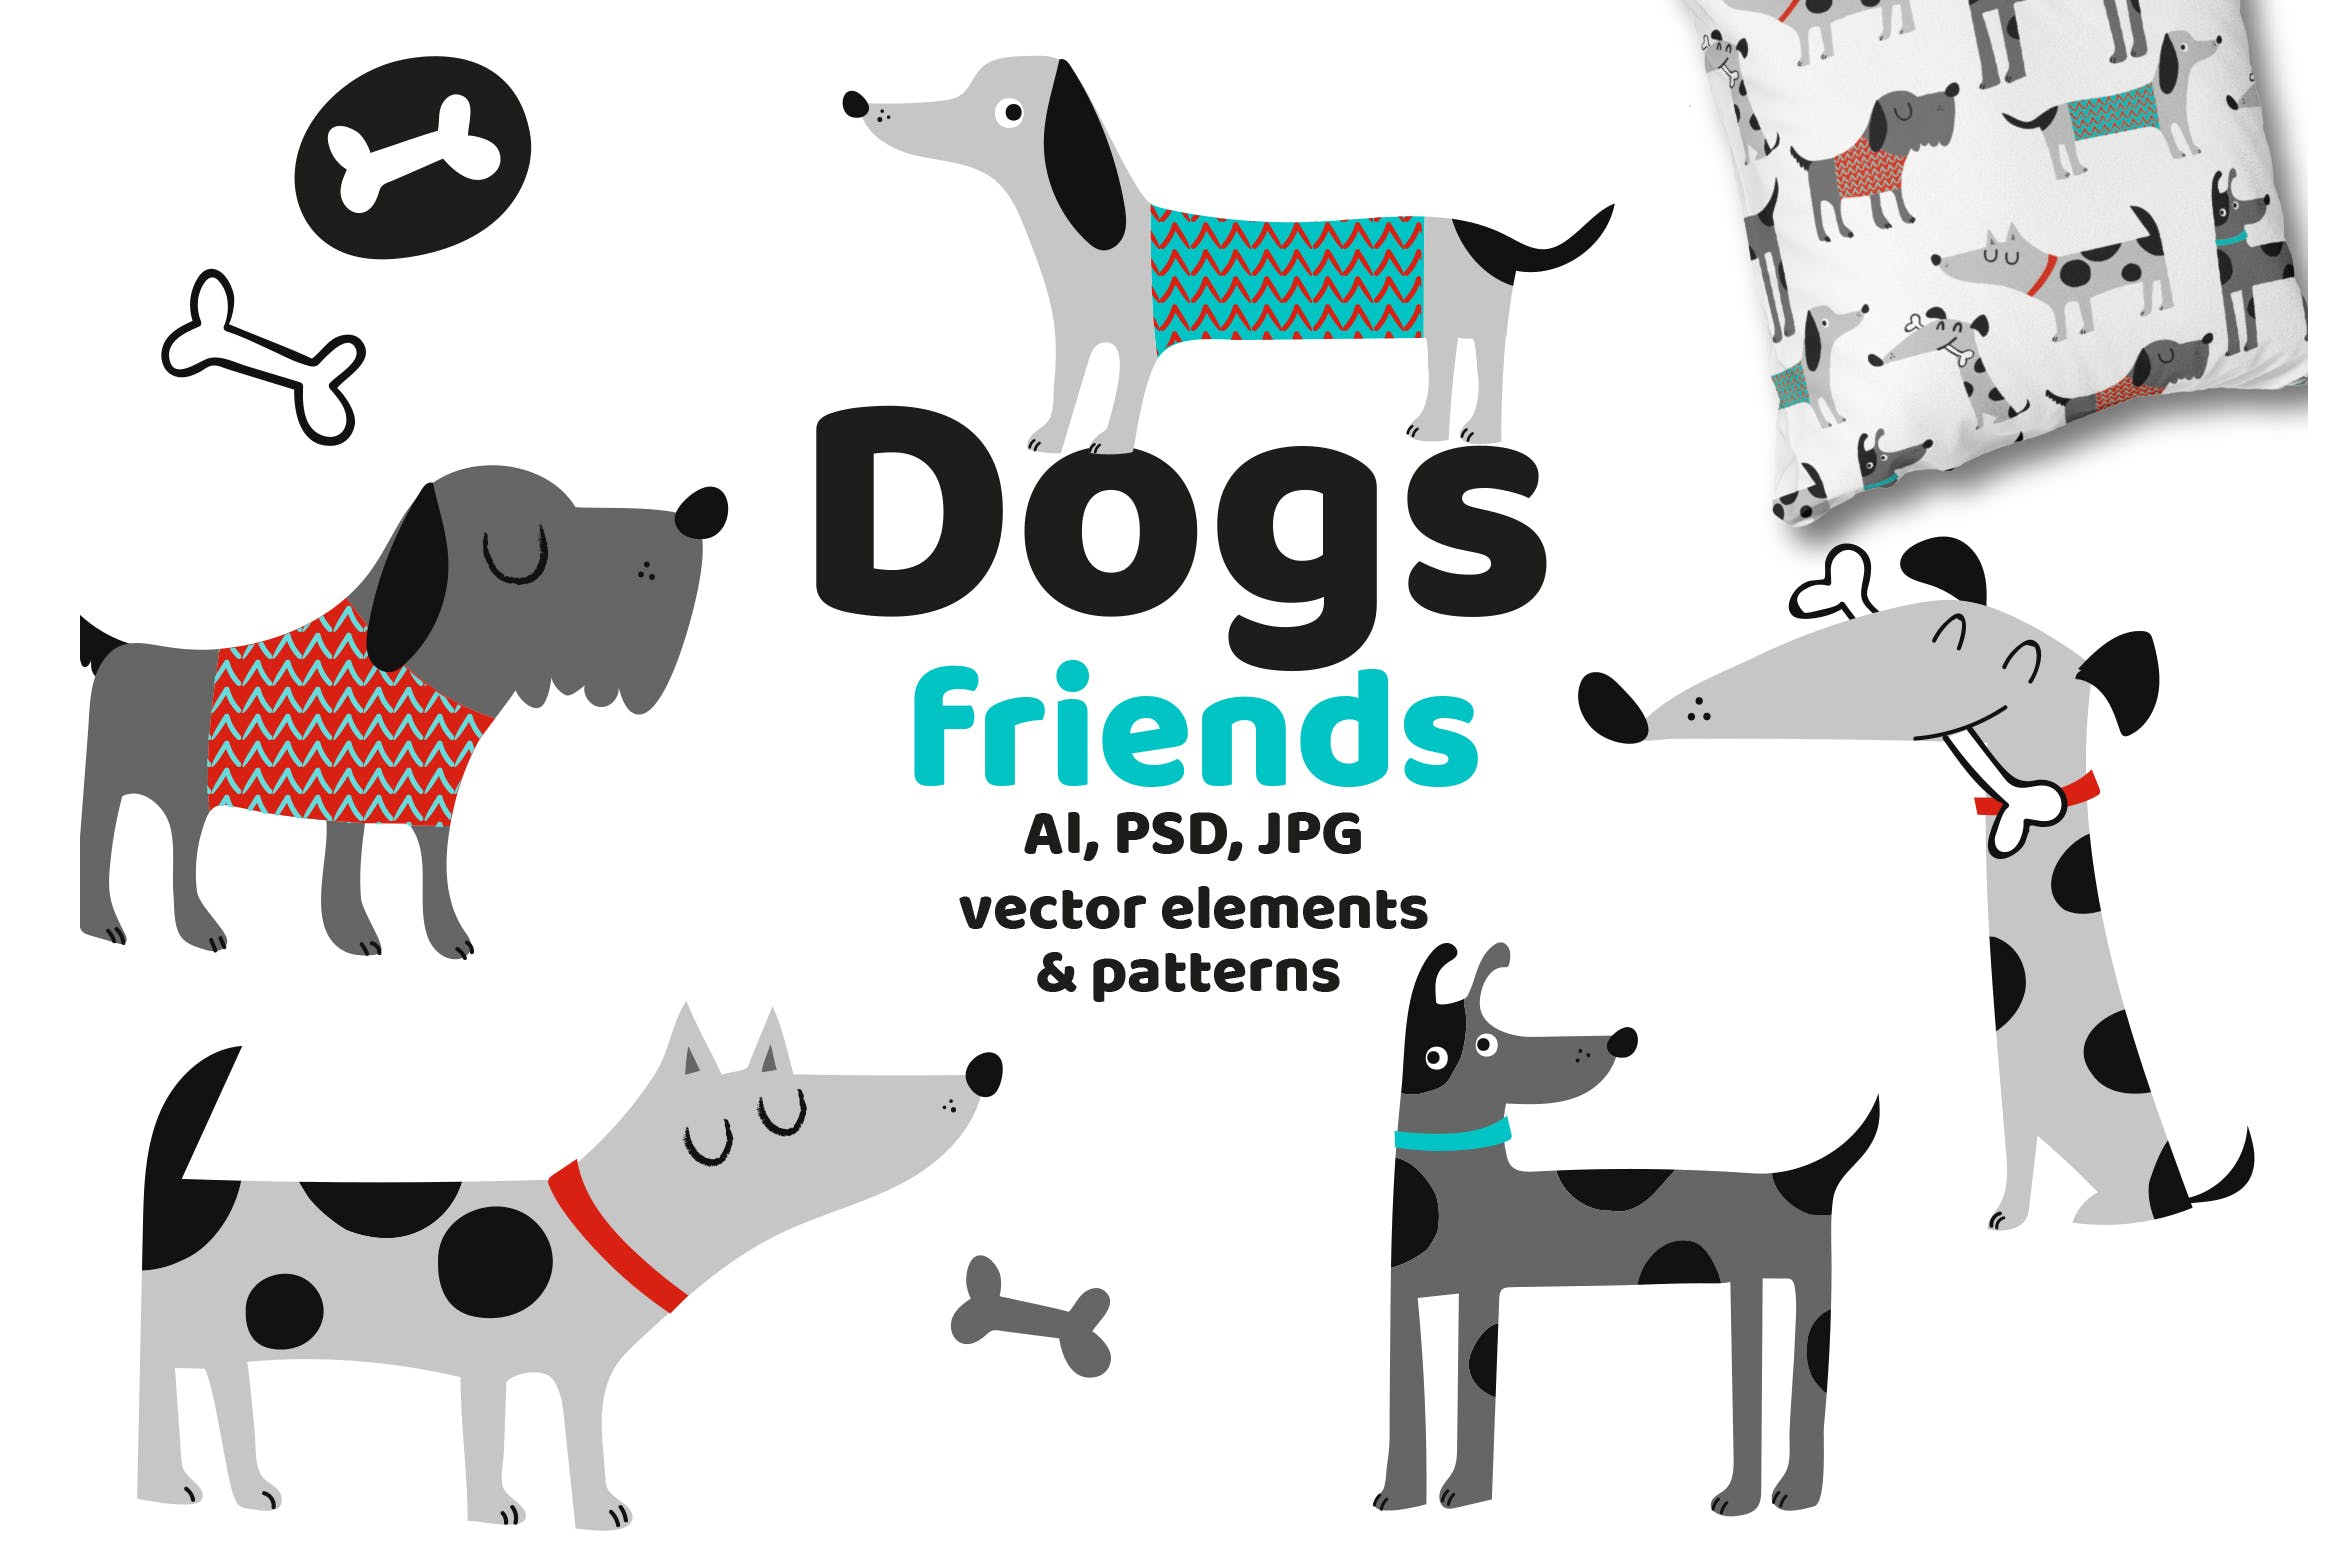 可爱卡通动物手绘图案背景第一素材精选 Dogs Friends插图